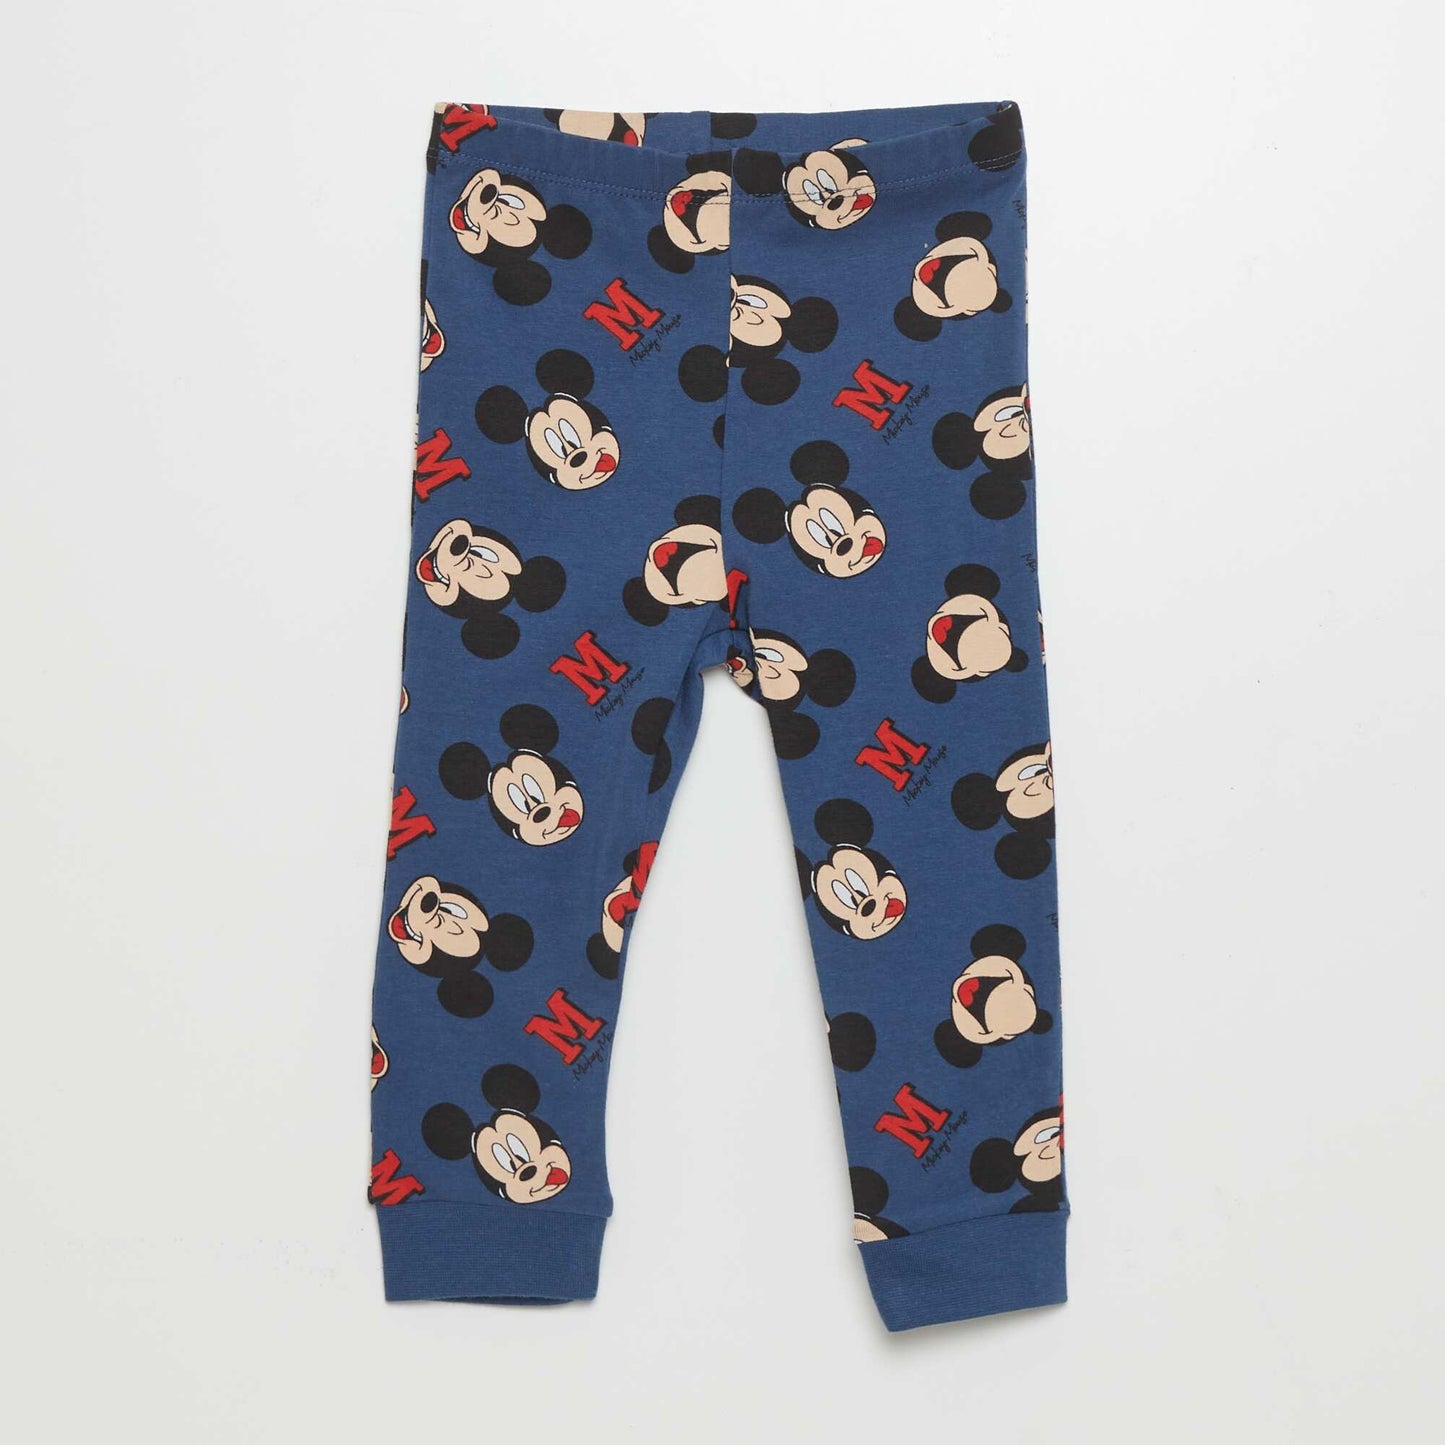 'Disney' pyjama T-shirt + bottoms set - 2-piece set BLUE